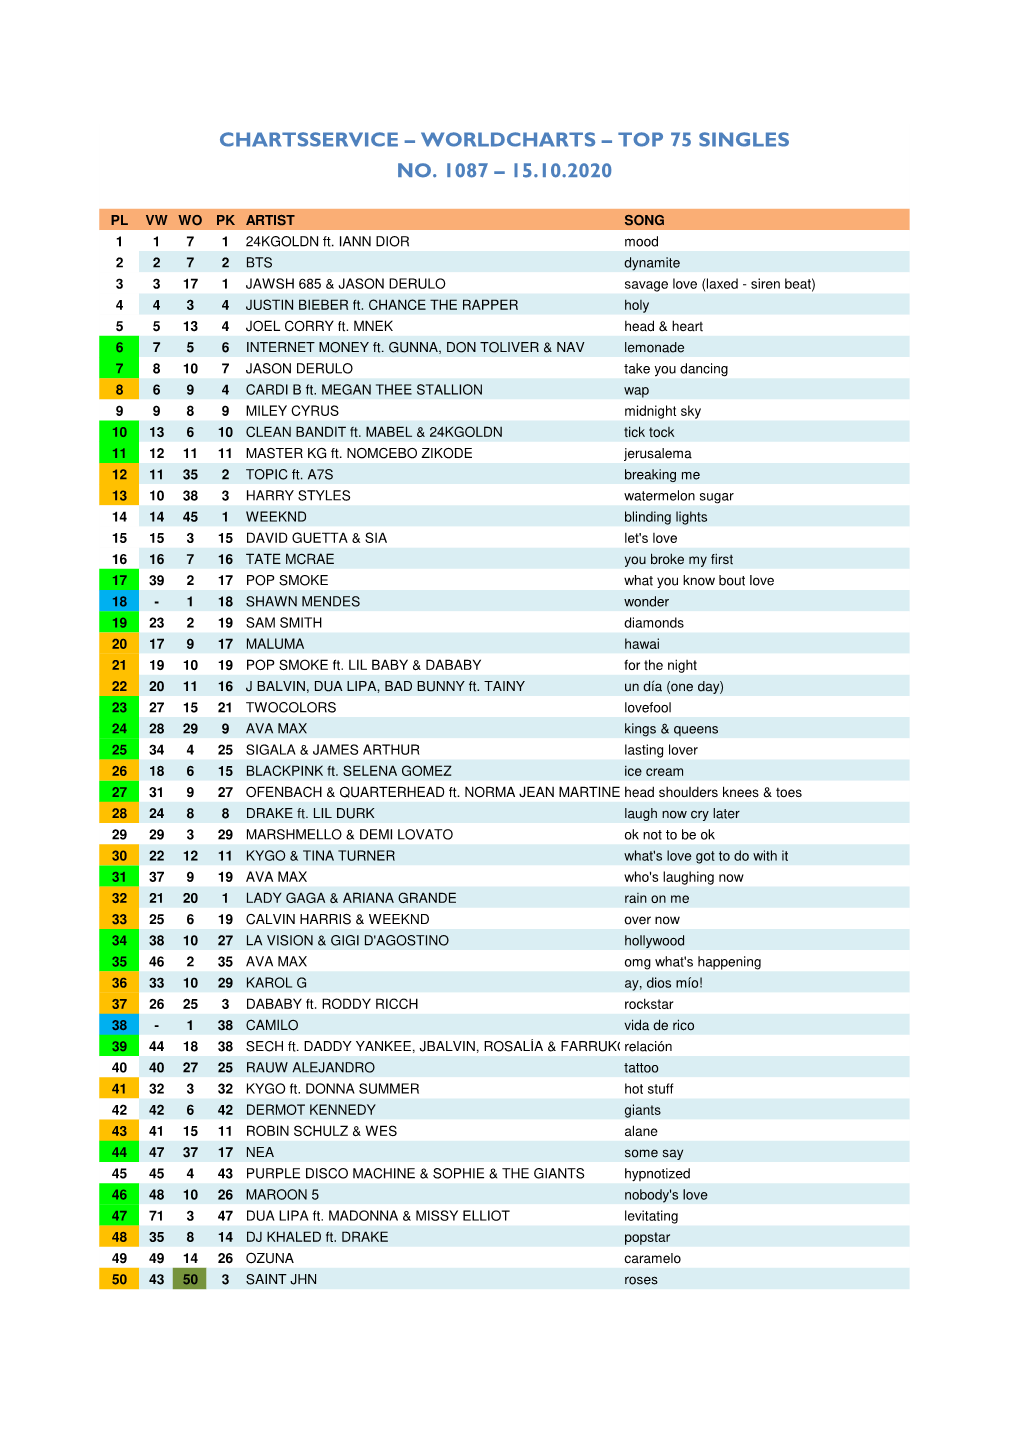 Worldcharts TOP 75 + Album TOP 30 Vom 15.10.2020